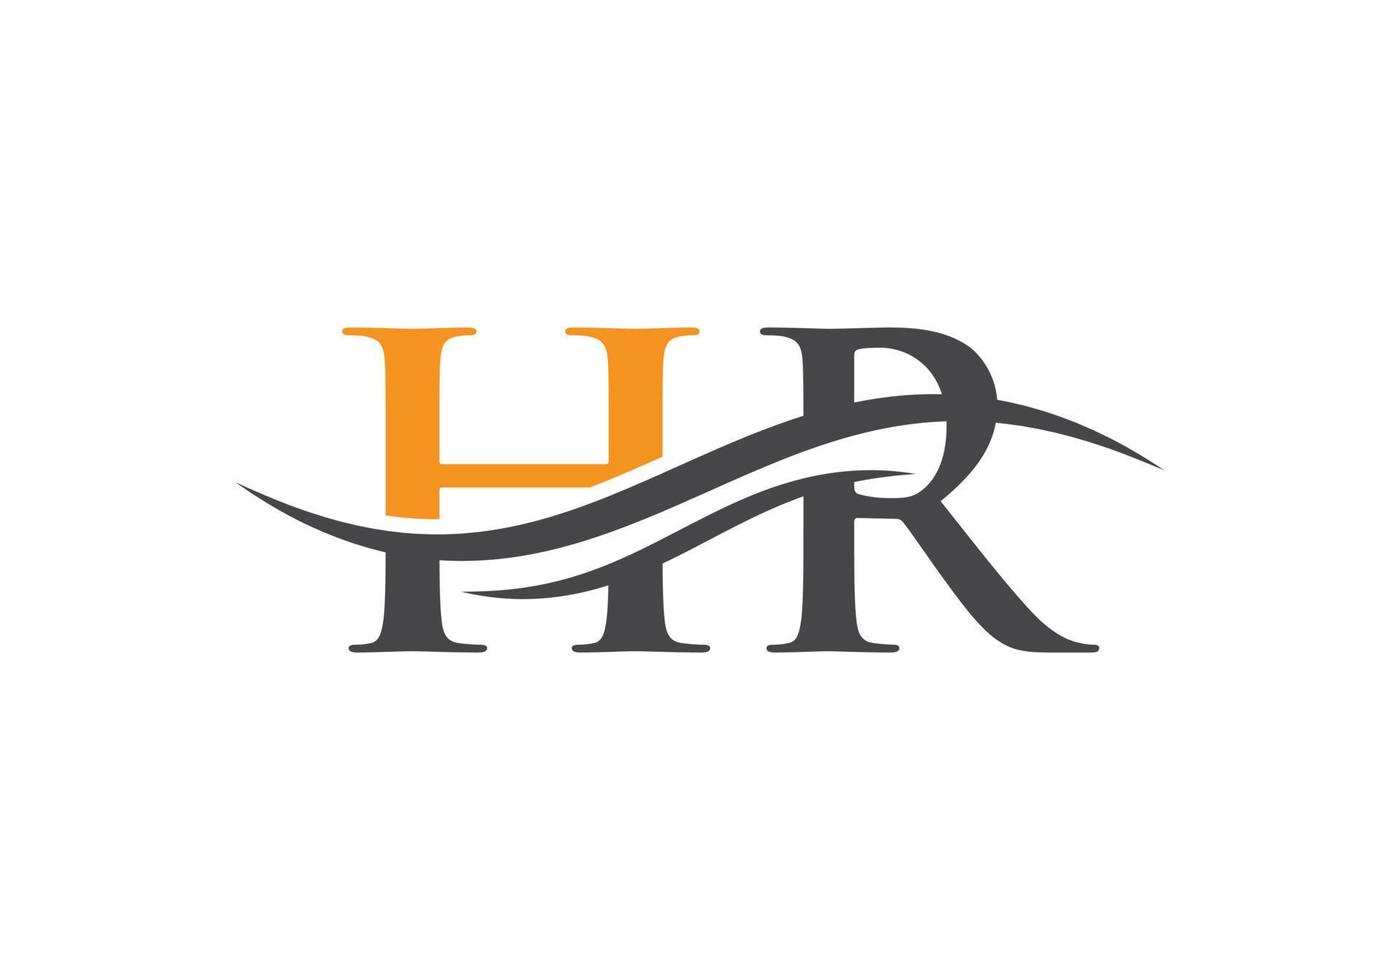 diseño moderno del logotipo de hr para la identidad empresarial y empresarial. carta de recursos humanos creativa con concepto de lujo vector